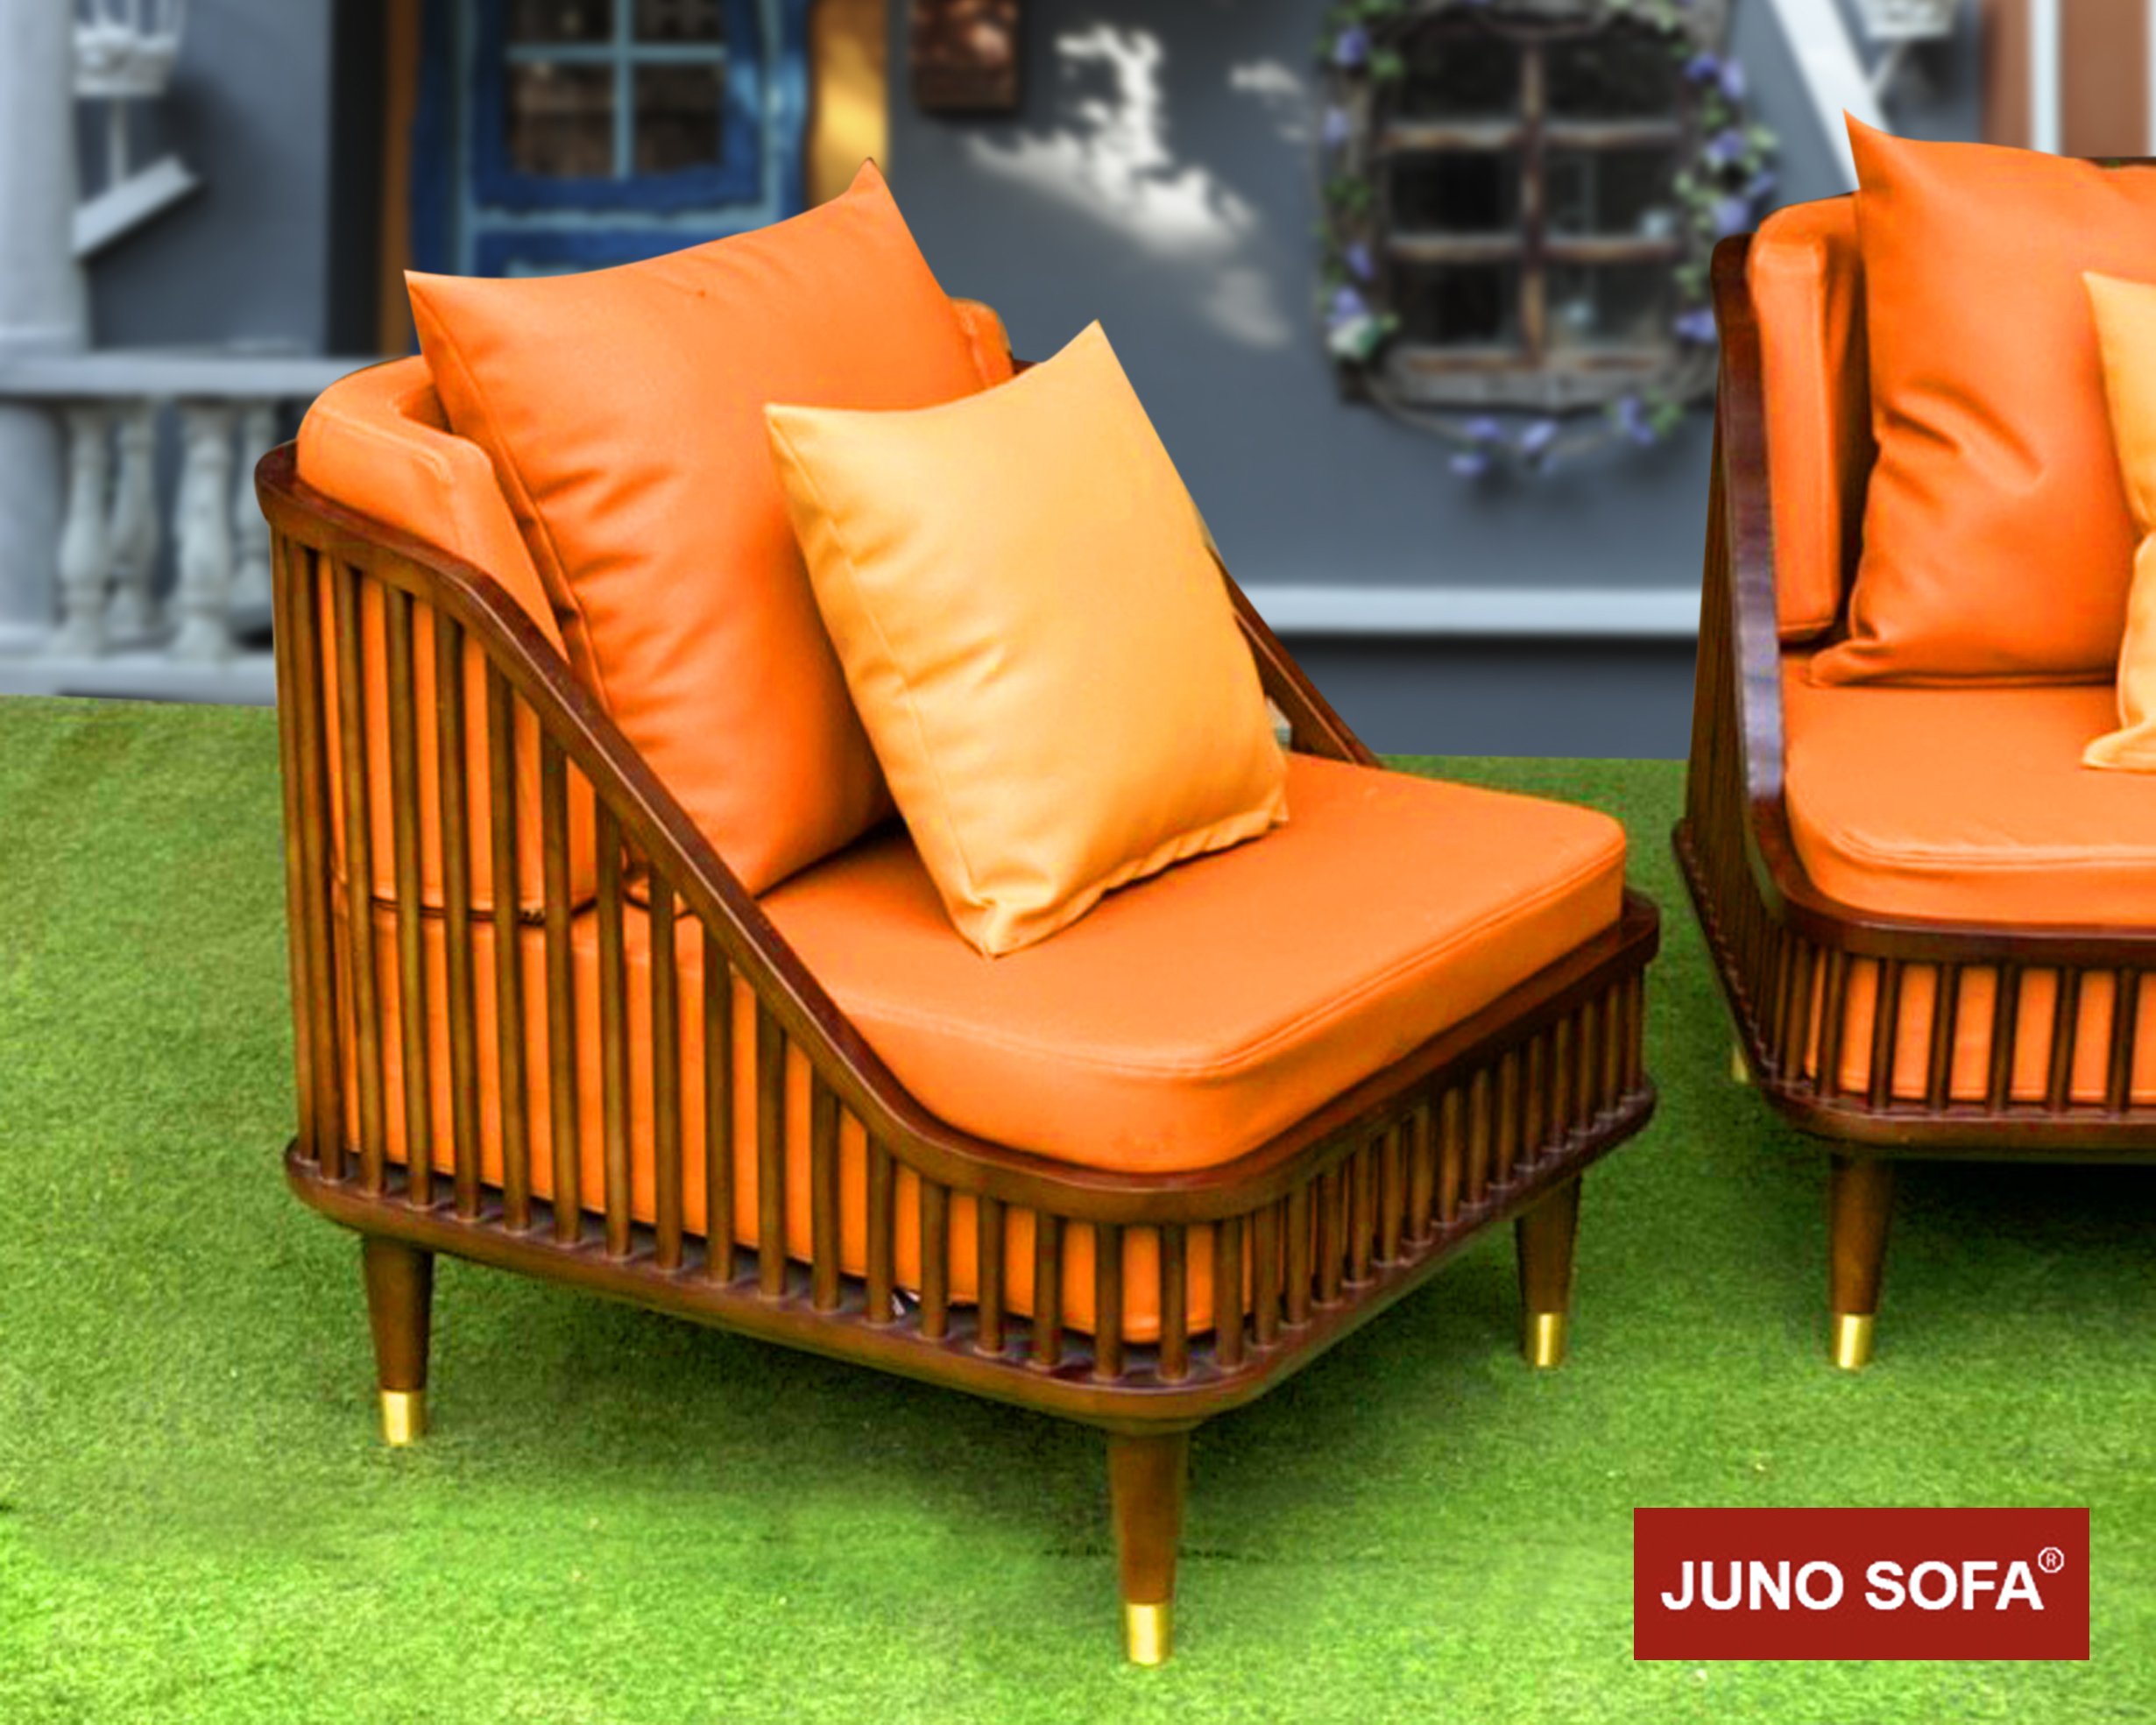 Bộ sofa Cao Cấp Bắc Âu Juno Sofa. băng 1m8, 2 đơn, đôn và bàn